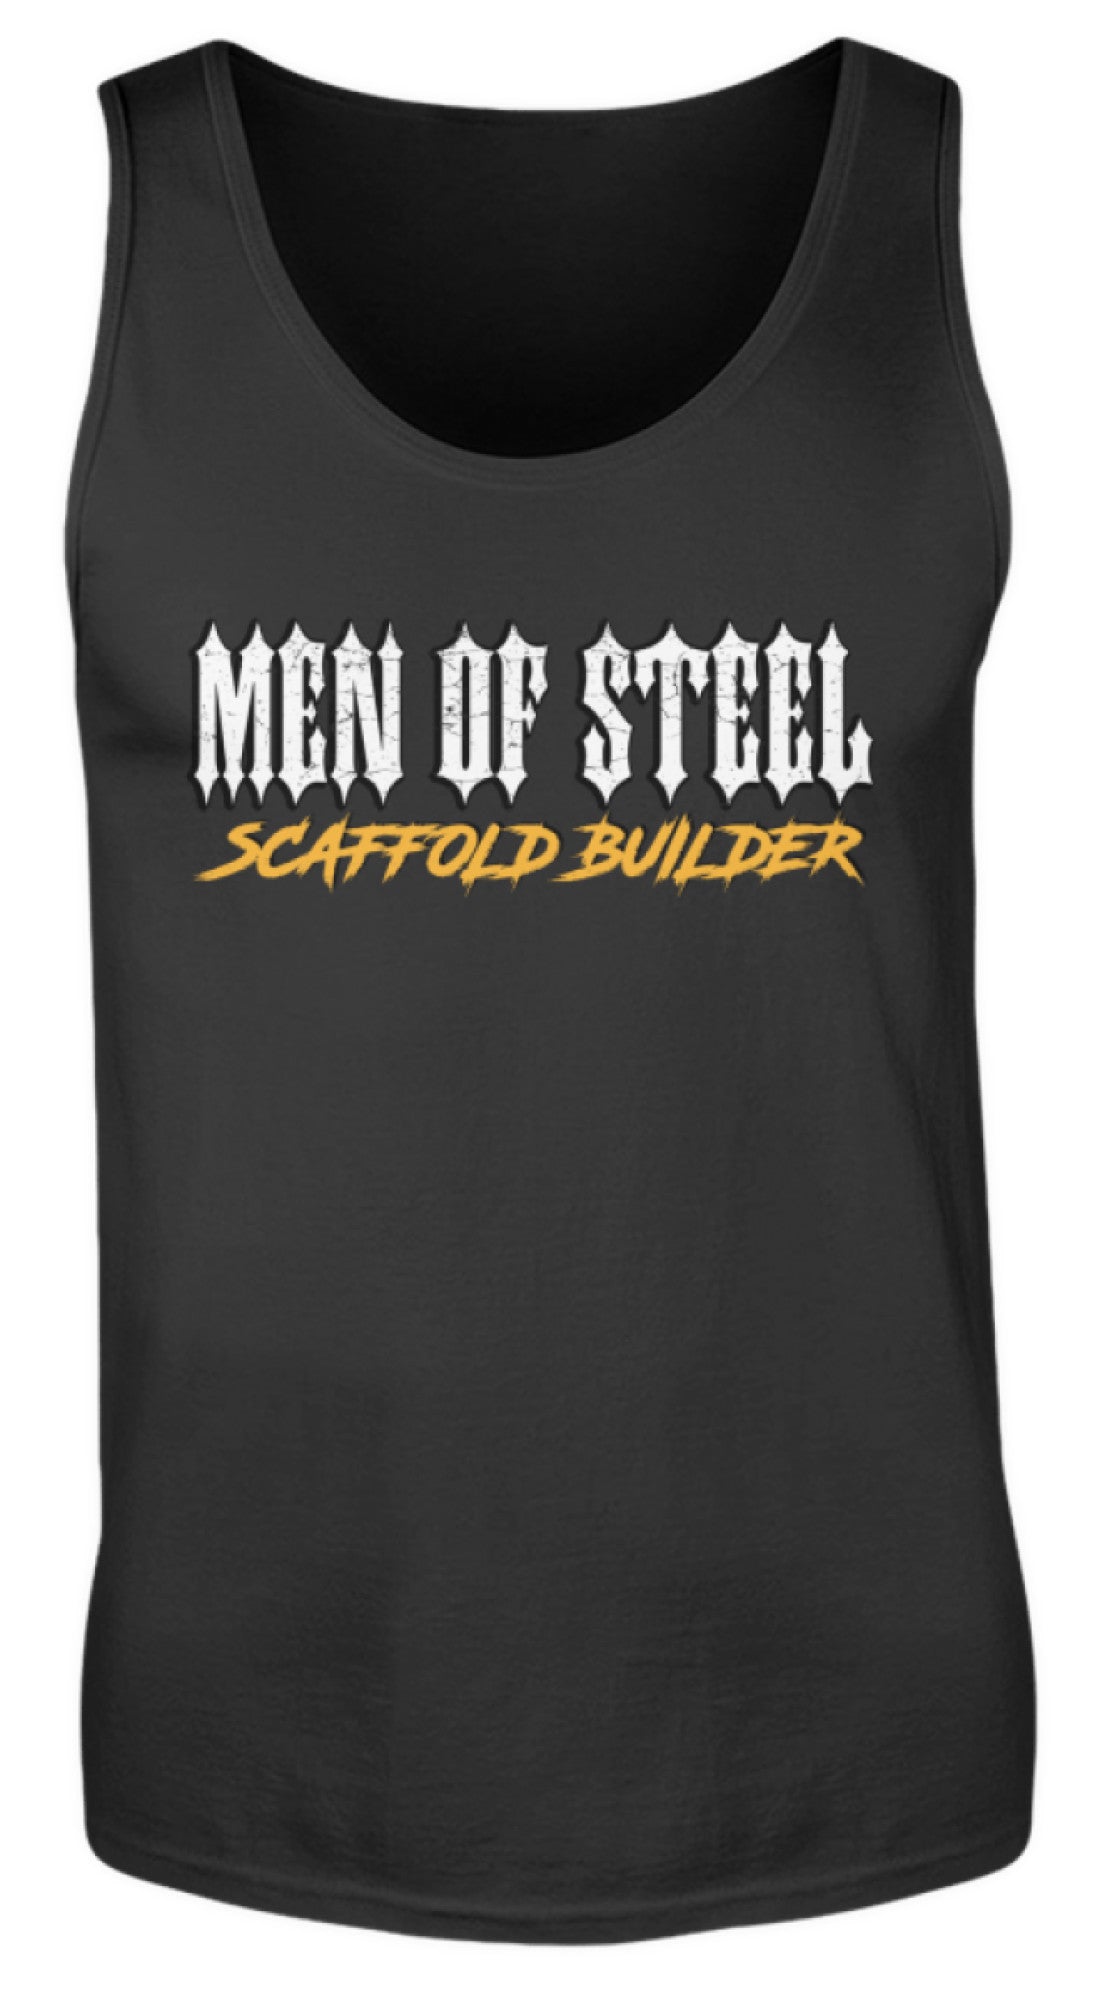 MEN OF STEEL / Scaffold Builder  - Herren Tanktop €19.95 Gerüstbauer - Shop >>